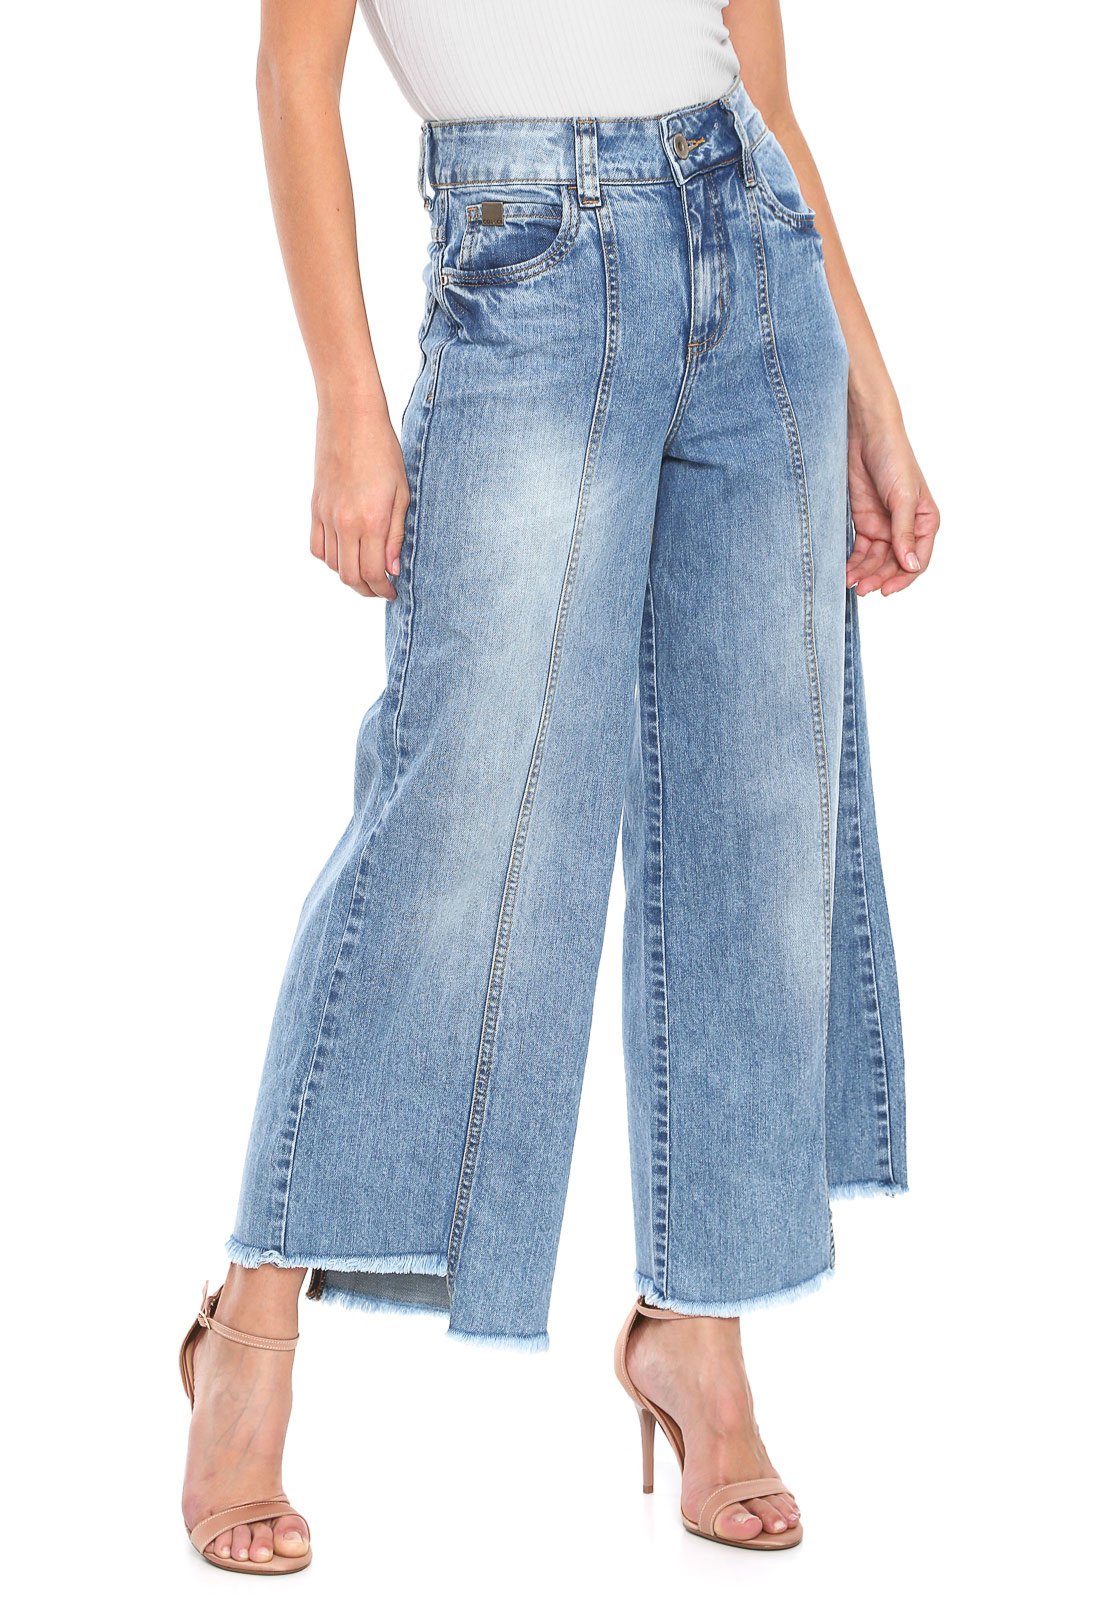 jaqueta jeans com short